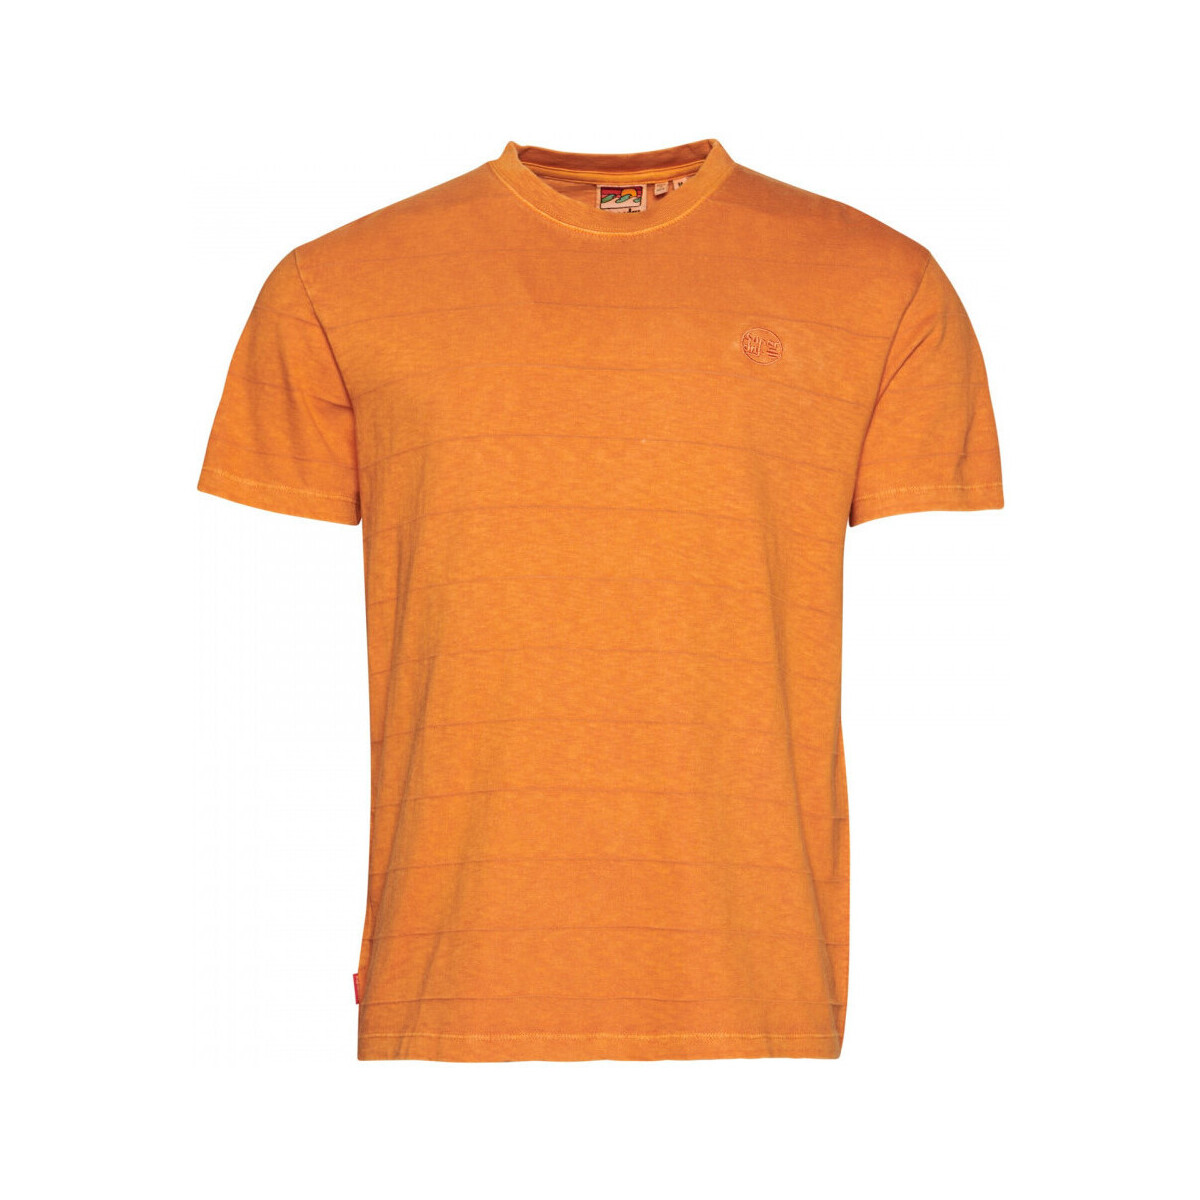 Îmbracaminte Bărbați Tricouri & Tricouri Polo Superdry Vintage texture portocaliu